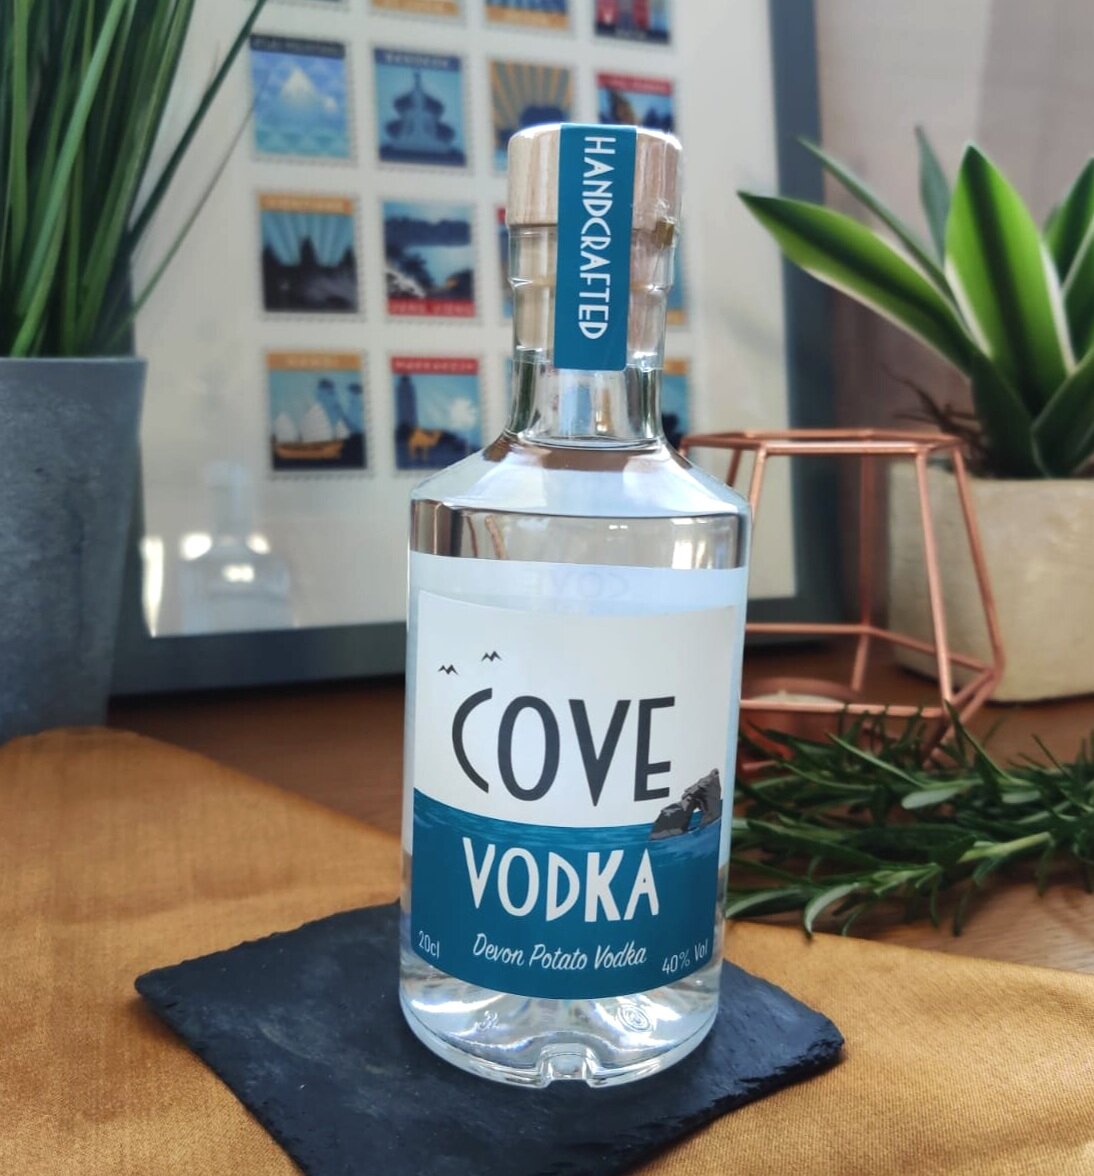 Devon Cove Vodka